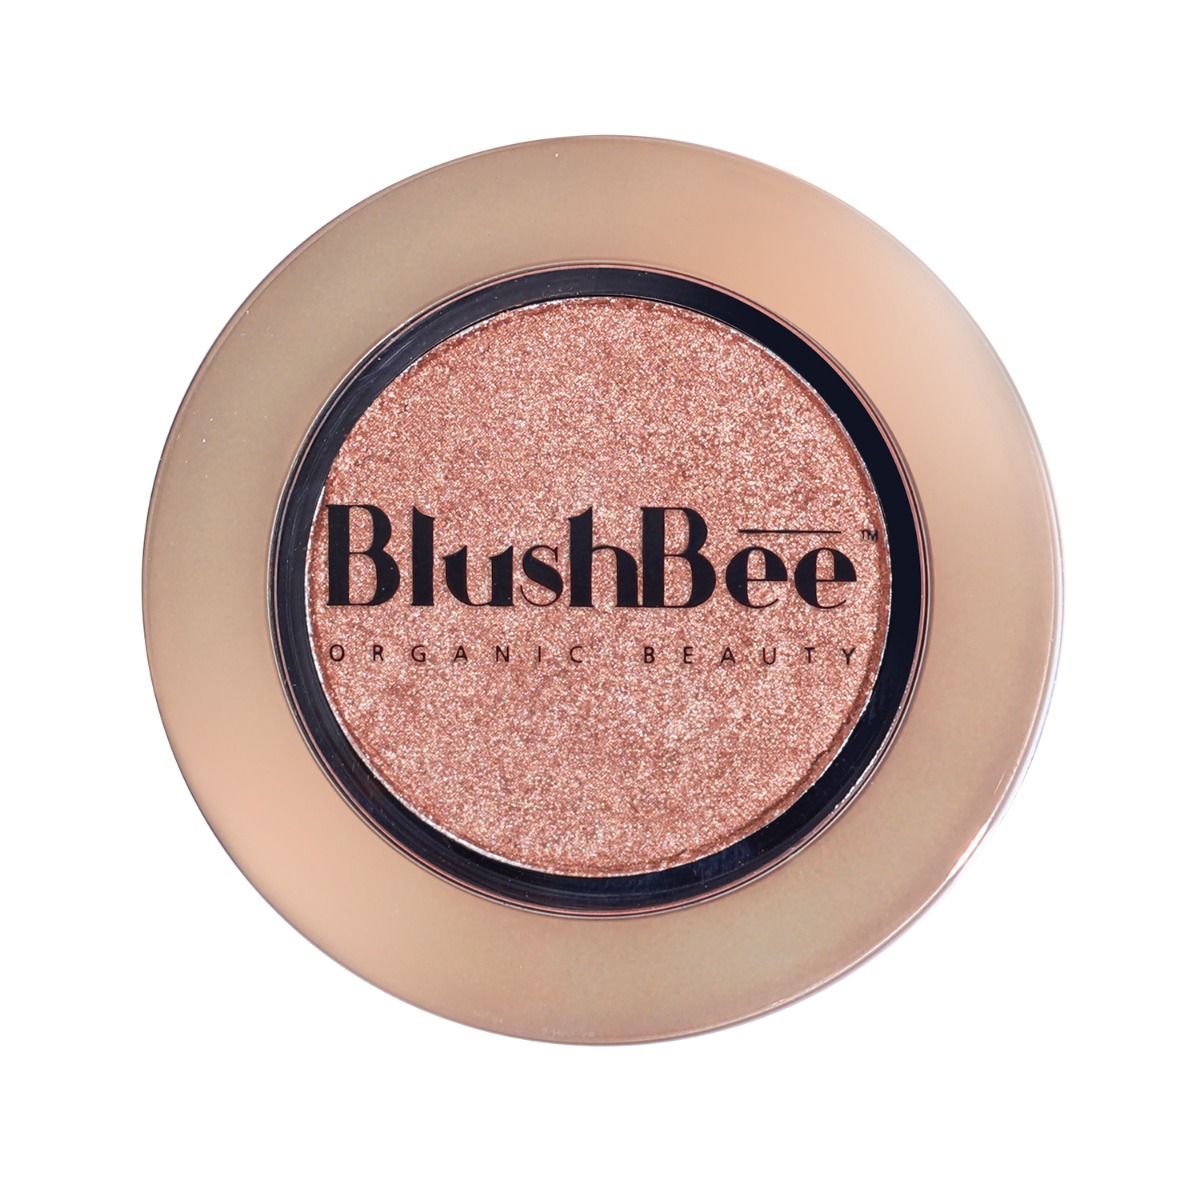 BlushBee Organic Beauty Natural Glow Organic Blush - TYL, 2.3gm